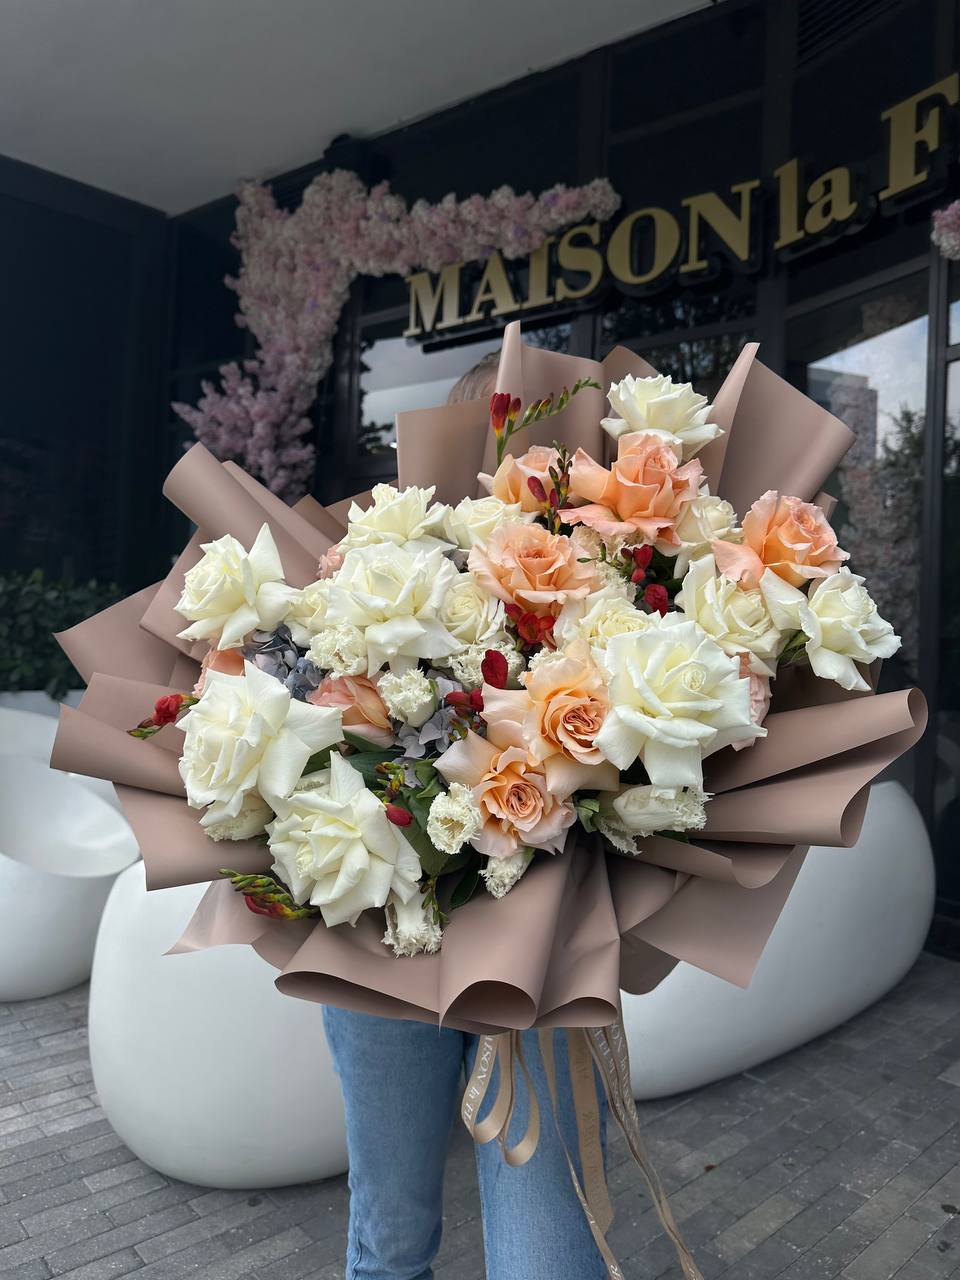 White Rose Bridal Bouquet , Crème de La crème - premium long stem roses, hydrangea, spray roses, stock, tulips - Maison la Fleur